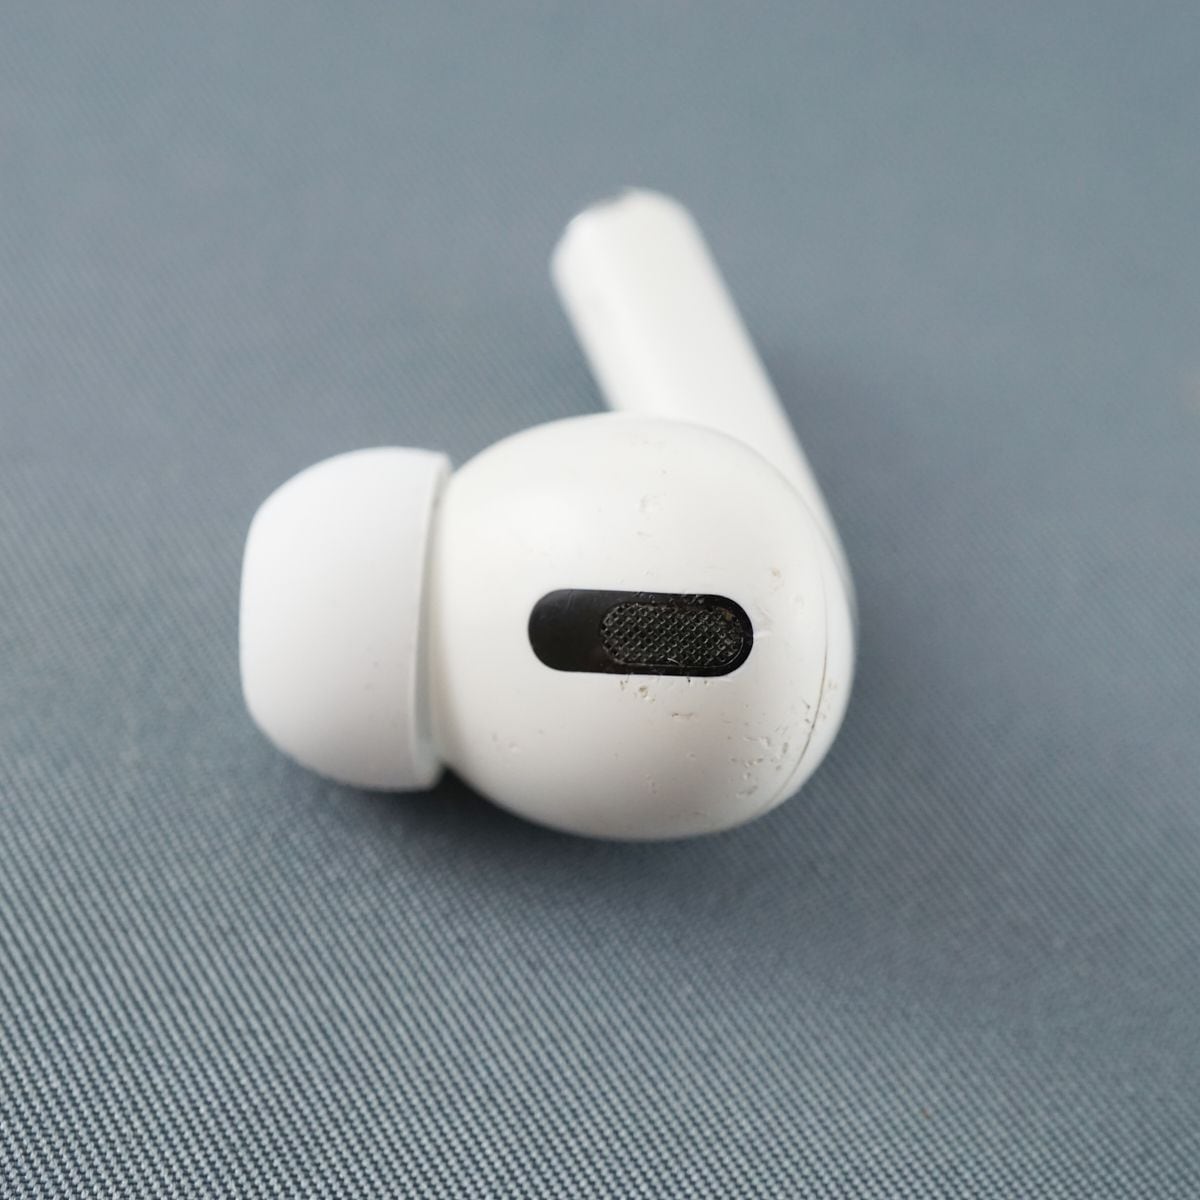 Apple純正ワイヤレスイヤホンAirPods第2世代左耳